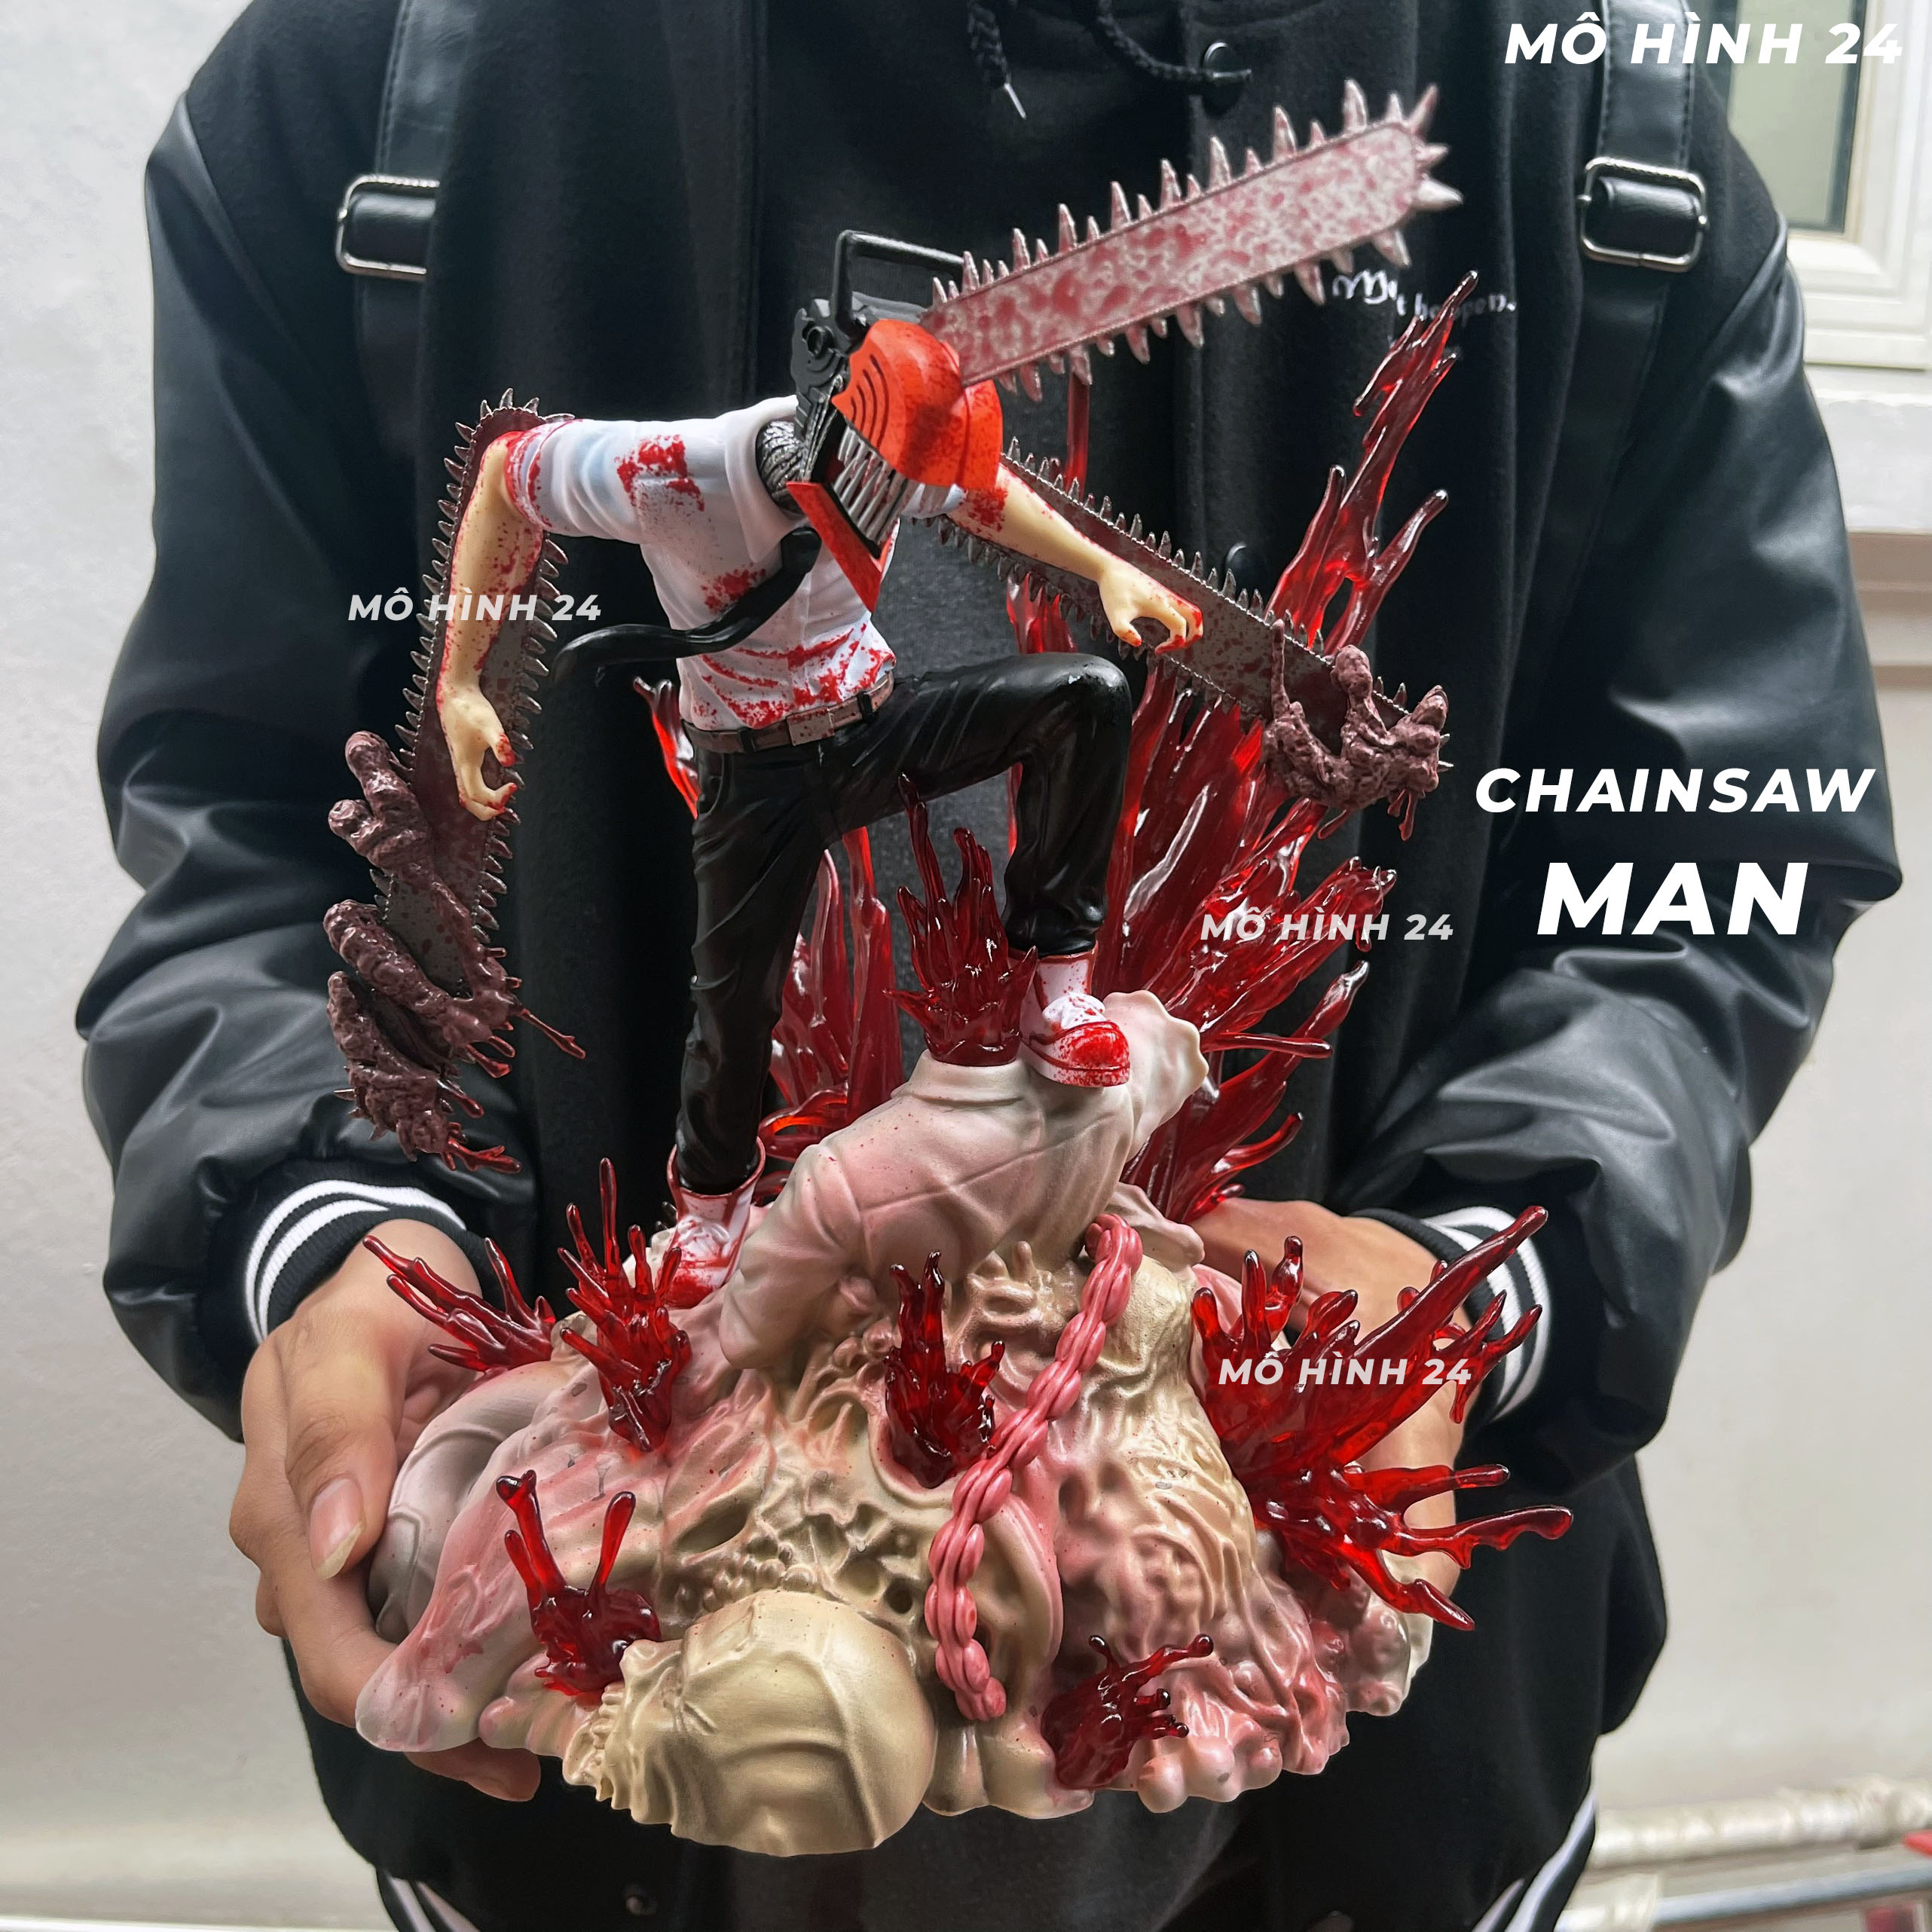 Chainsaw Man mô hình chibi là một sản phẩm đầy sáng tạo và vui nhộn. Với các chi tiết nhỏ xinh, sản phẩm này sẽ là món quà tuyệt vời cho fan của truyện tranh hoặc sưu tập mô hình. Hãy cùng xem hình ảnh để khám phá thế giới chibi tuyệt vời này!